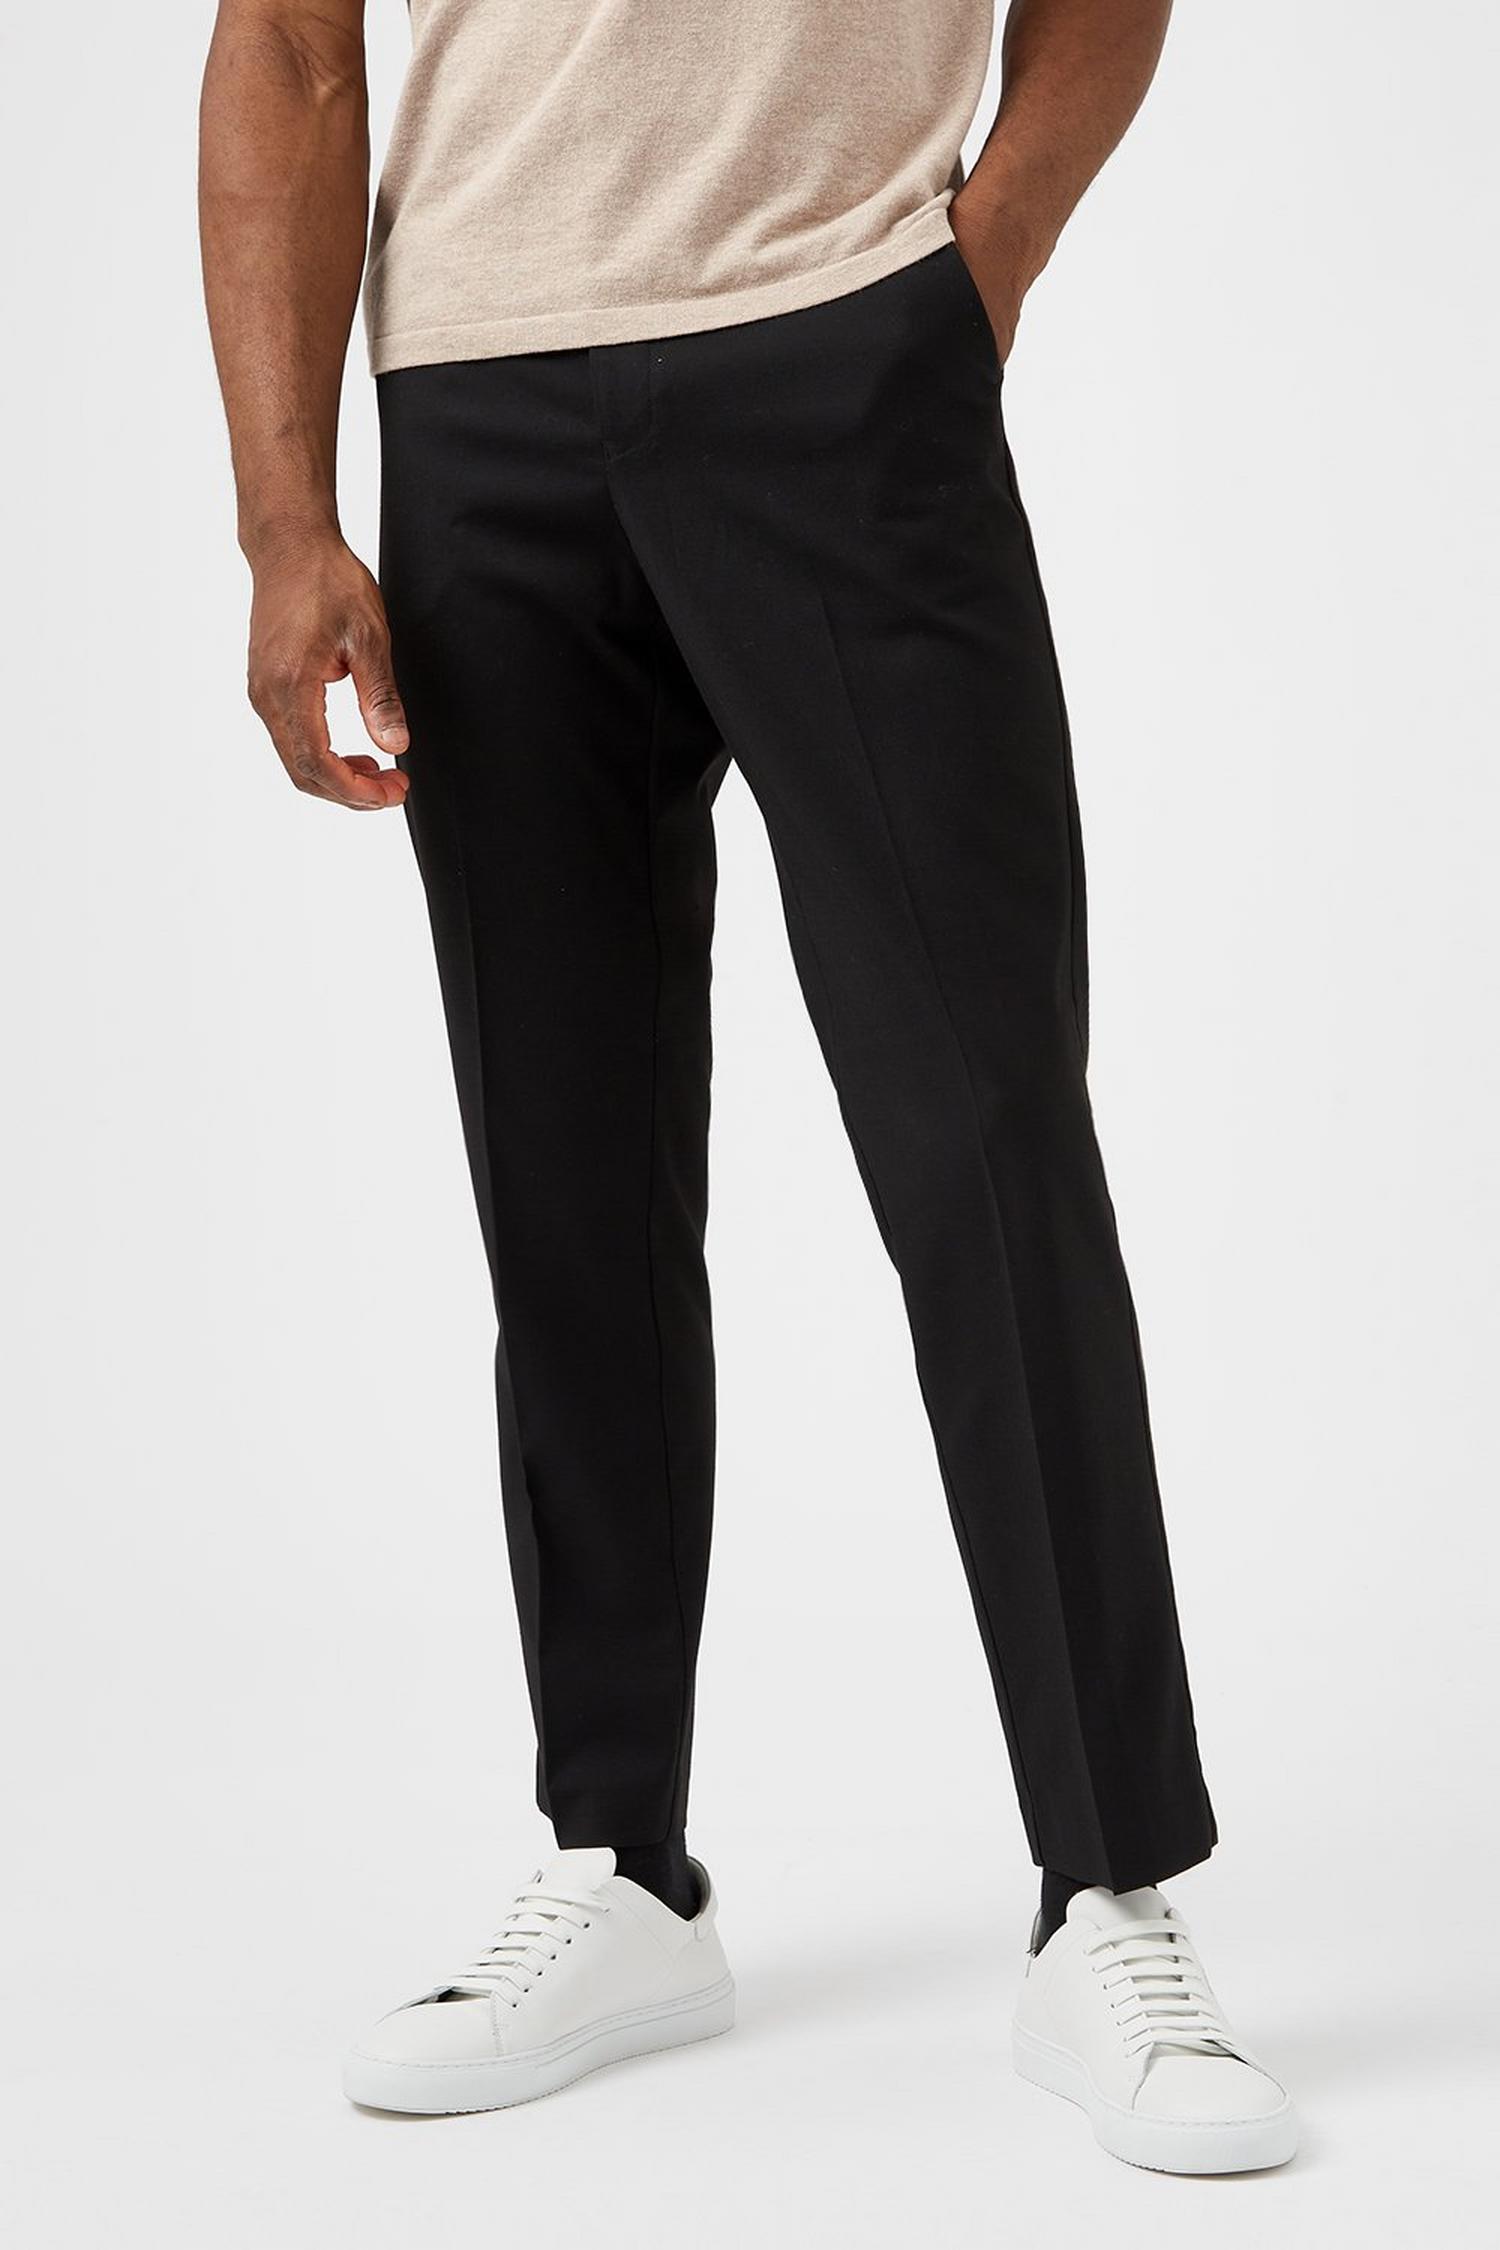 Black Tailored Fit Stretch Trousers | Burton EU